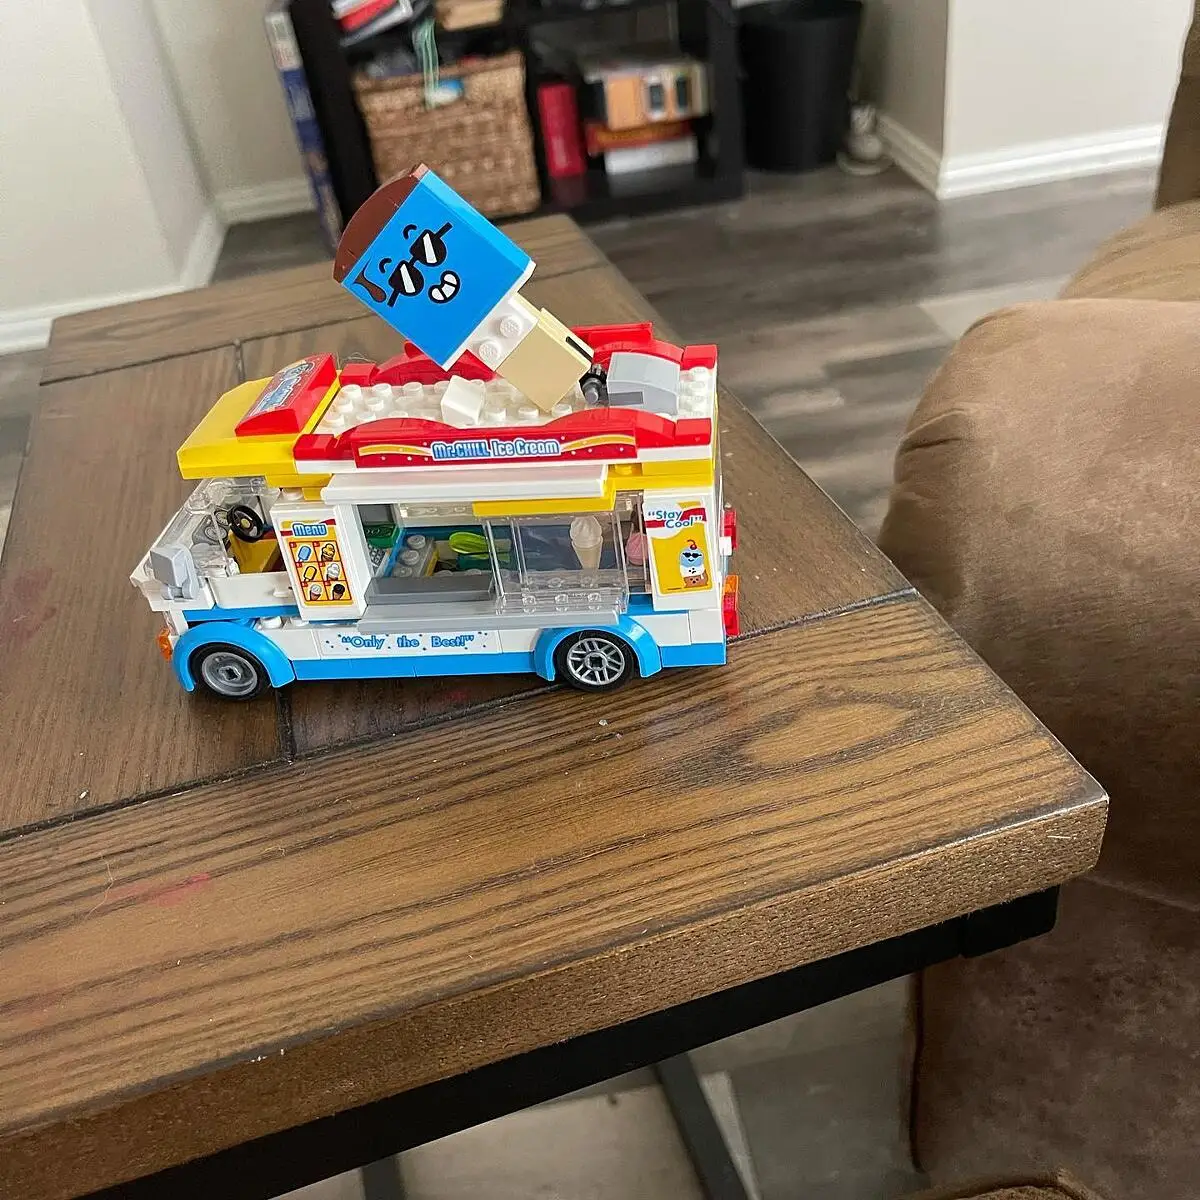 LEGO City 60253 Le camion de la marchande de glaces, Kit de Construction  Jouet Enfants 5 ans et + avec Mini-figurine de chien - ADMI